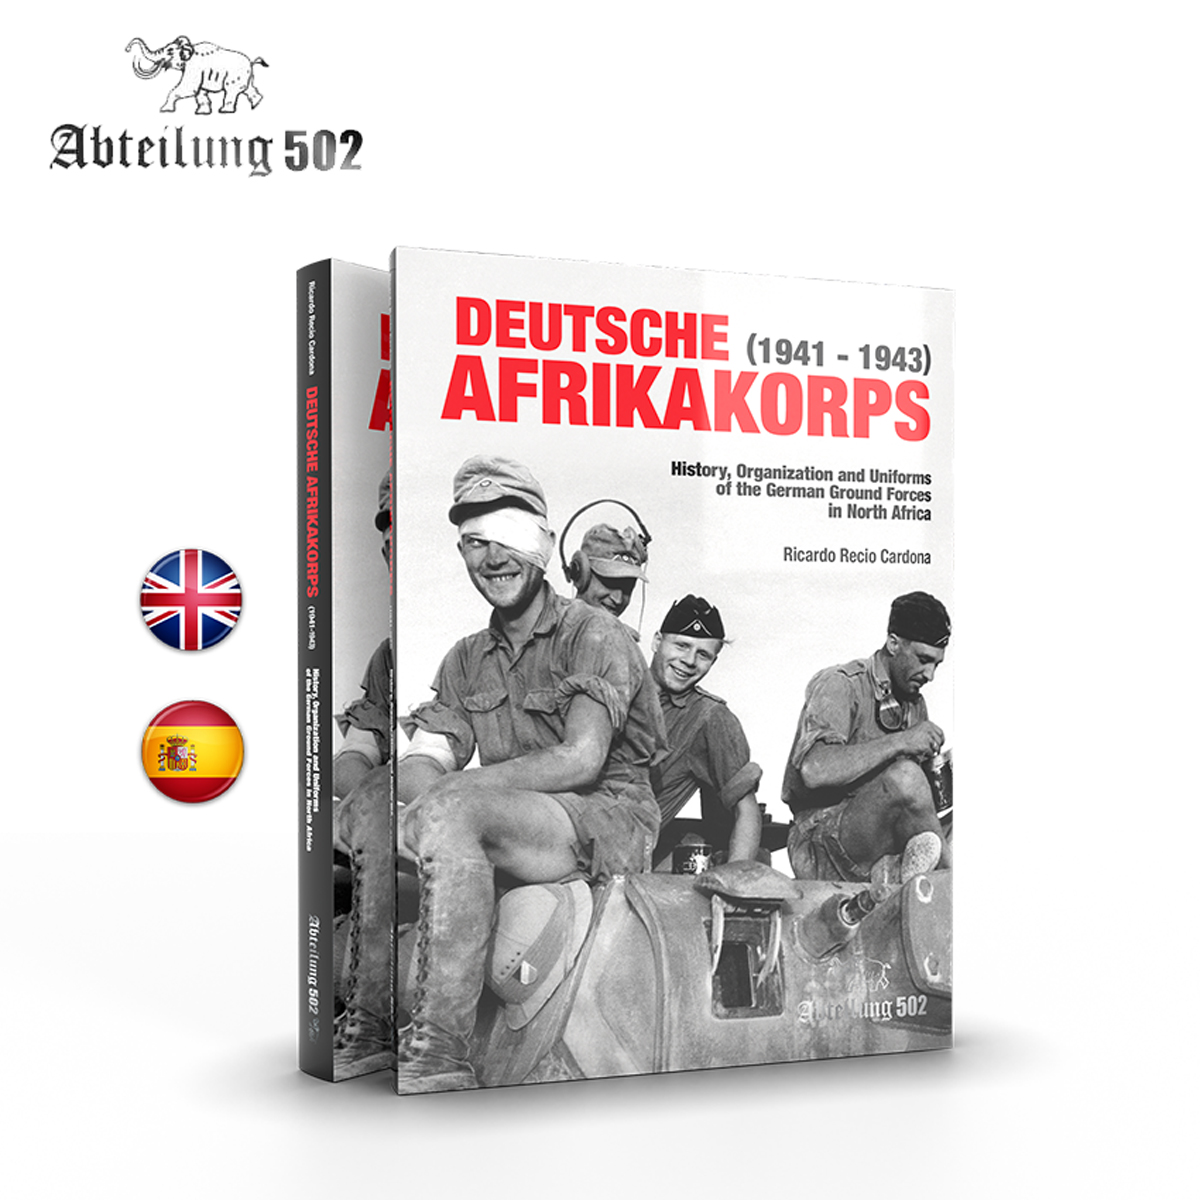 Abteilung 502 DEUTSCHE AFRIKA KORPS (1941 - 1943) (English)